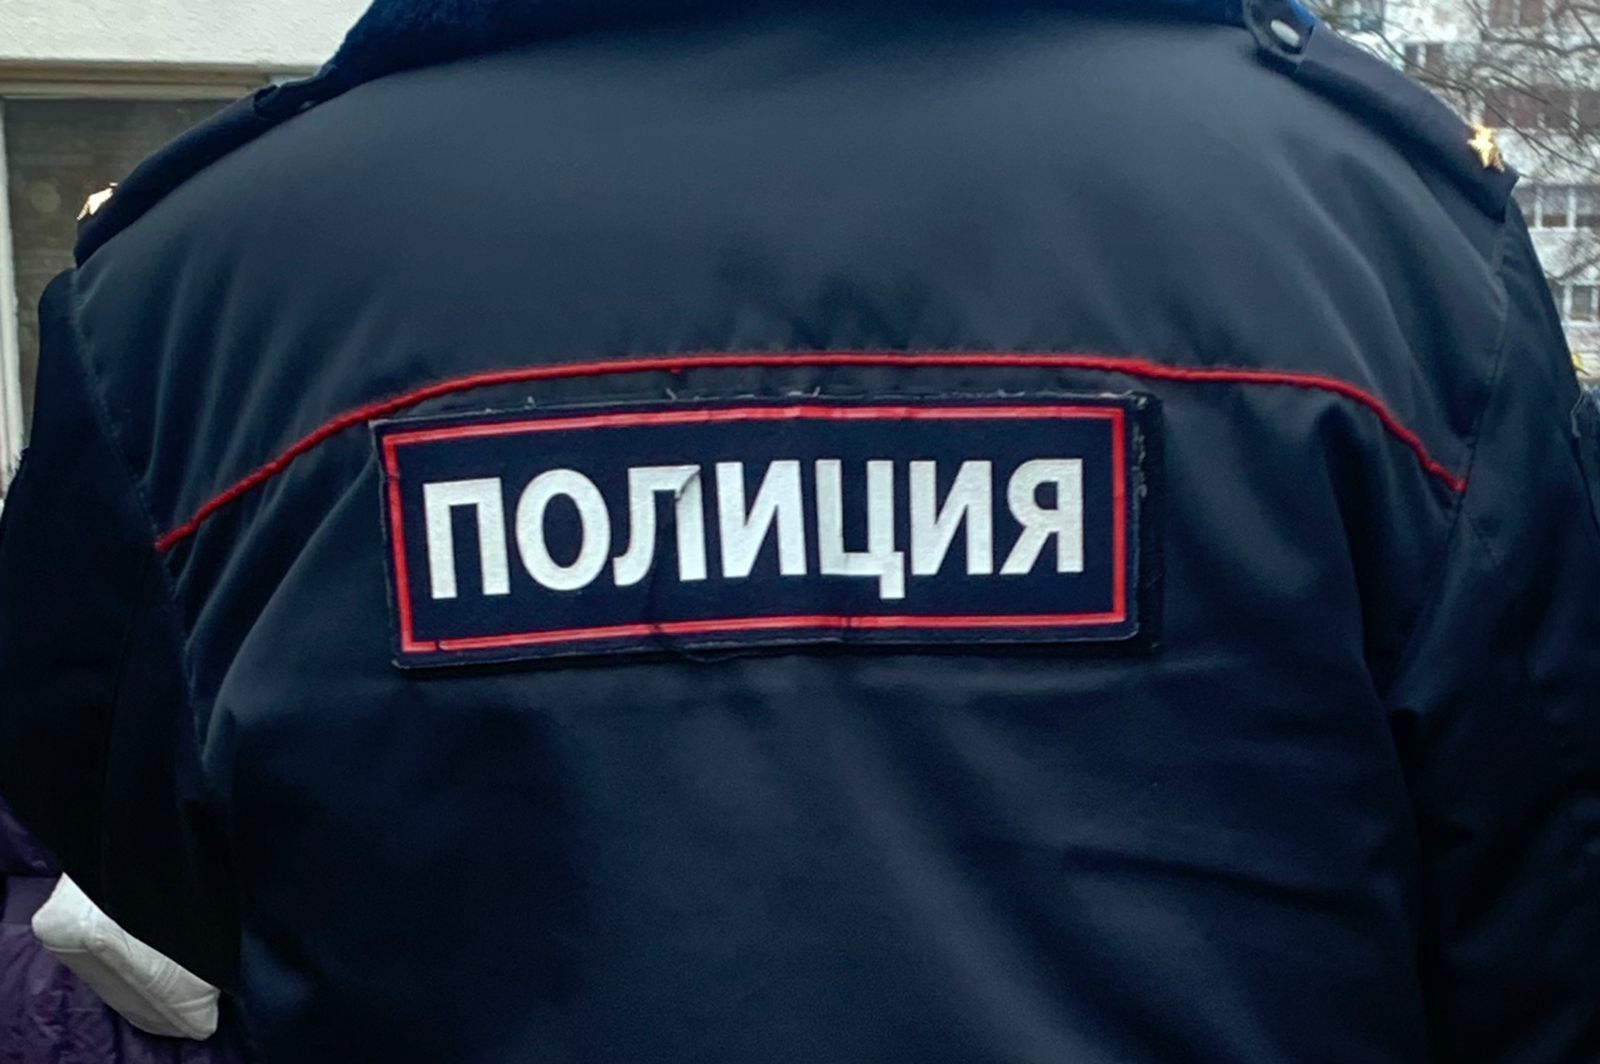 Жительница Челнов обнаружила тело 38-летнего сожителя на даче